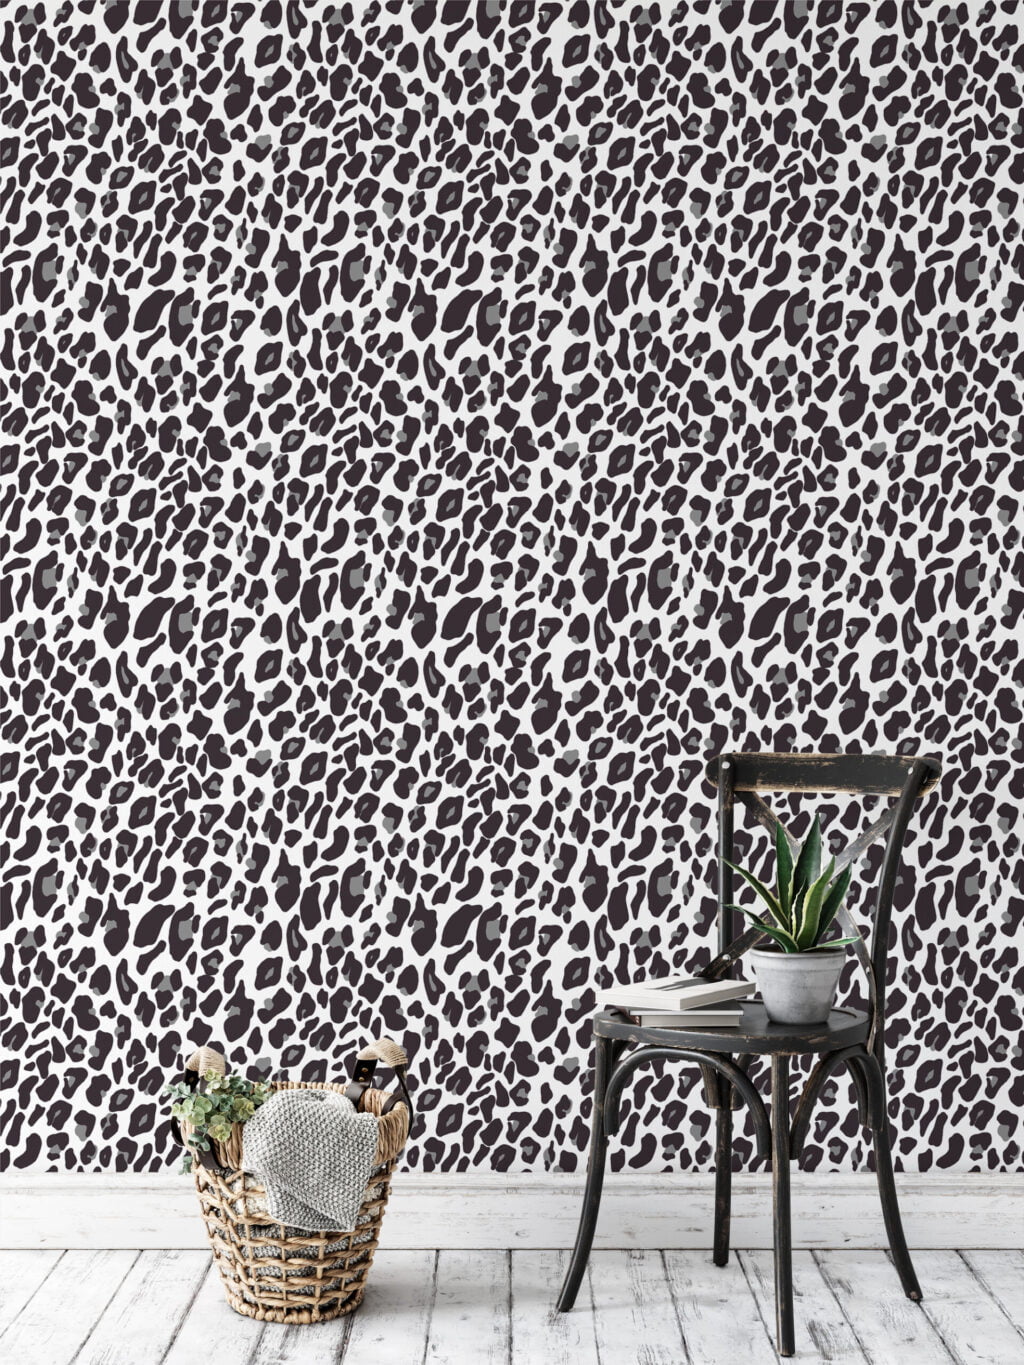 Beyaz Gri Leopar Jaguar Derisi Desenli Duvar Kağıdı, Monokrom Leopar Benekli Duvar Posteri Hayvan Motifli Duvar Kağıtları 3